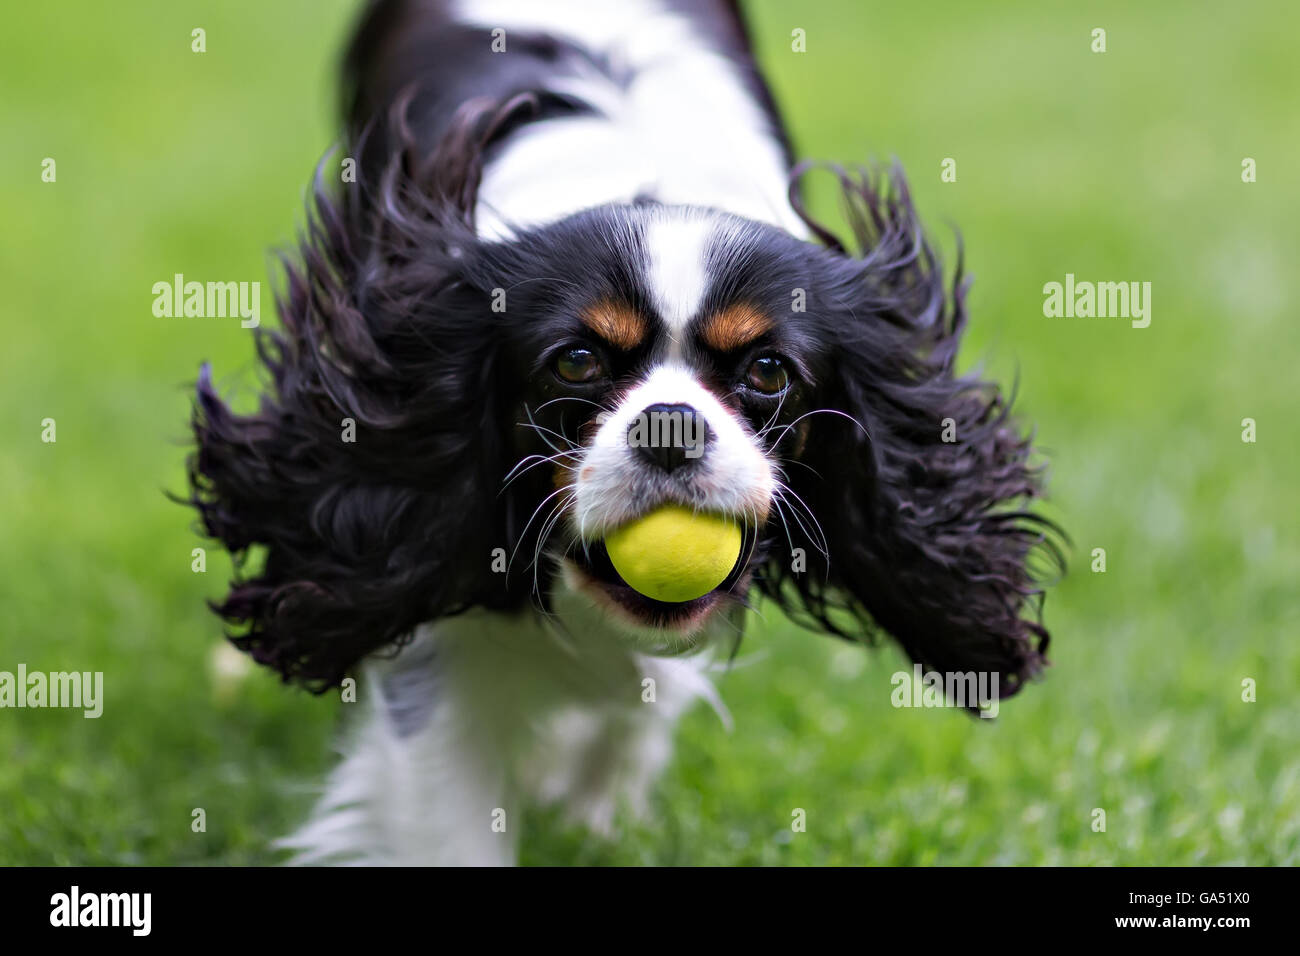 niedlichen Hund, cavalier Spaniel mit Ball laufen auf dem Rasen Stockfoto